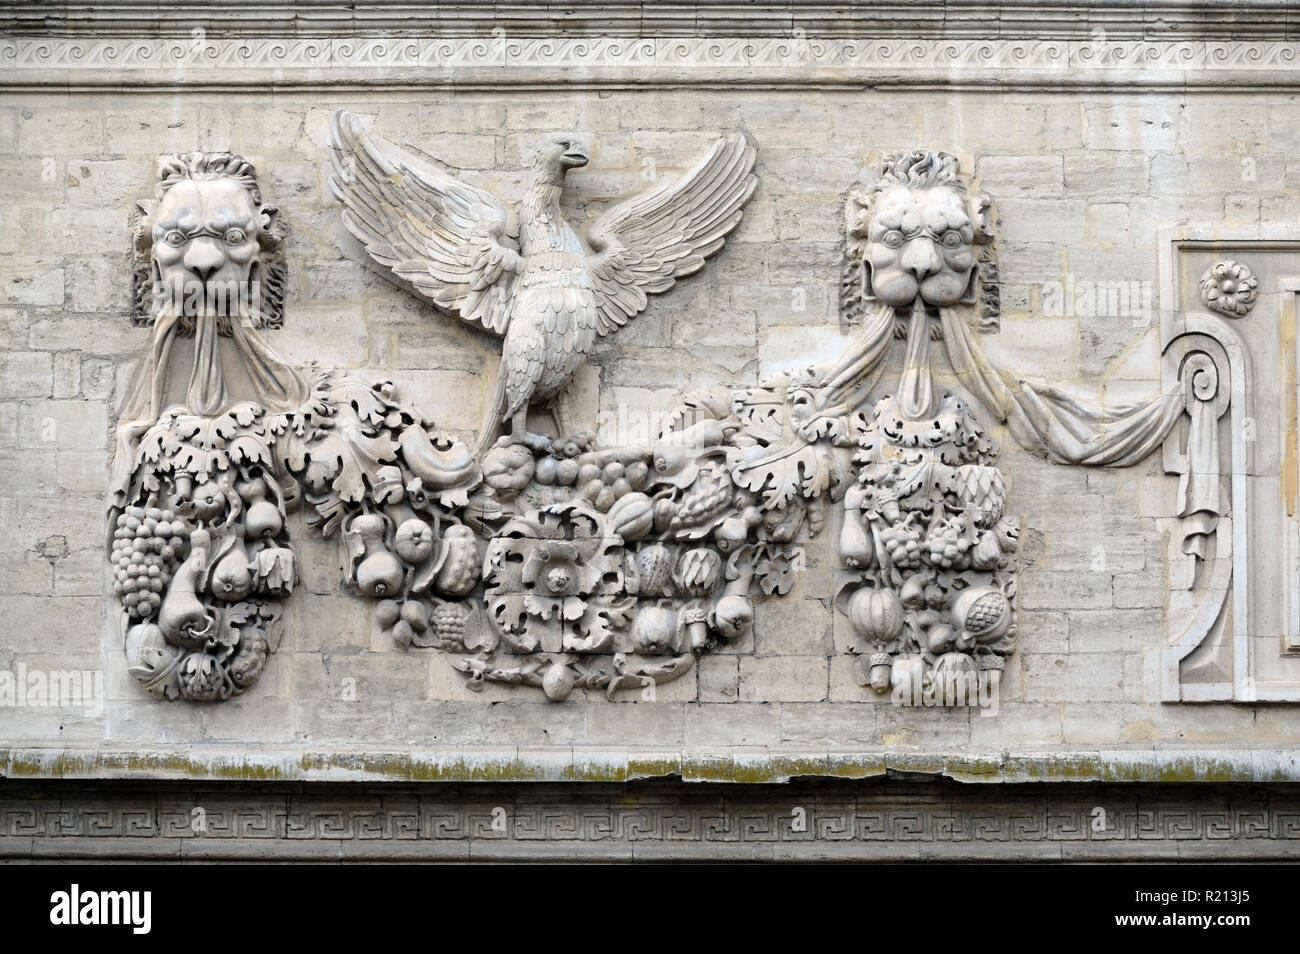 Eagle, Garland et Lion sculptures sur pierre sculpture baroque et façade de l'Hôtel des Monnaies (1619) ou hôtel particulier Maison de ville Avignon Provence France Banque D'Images